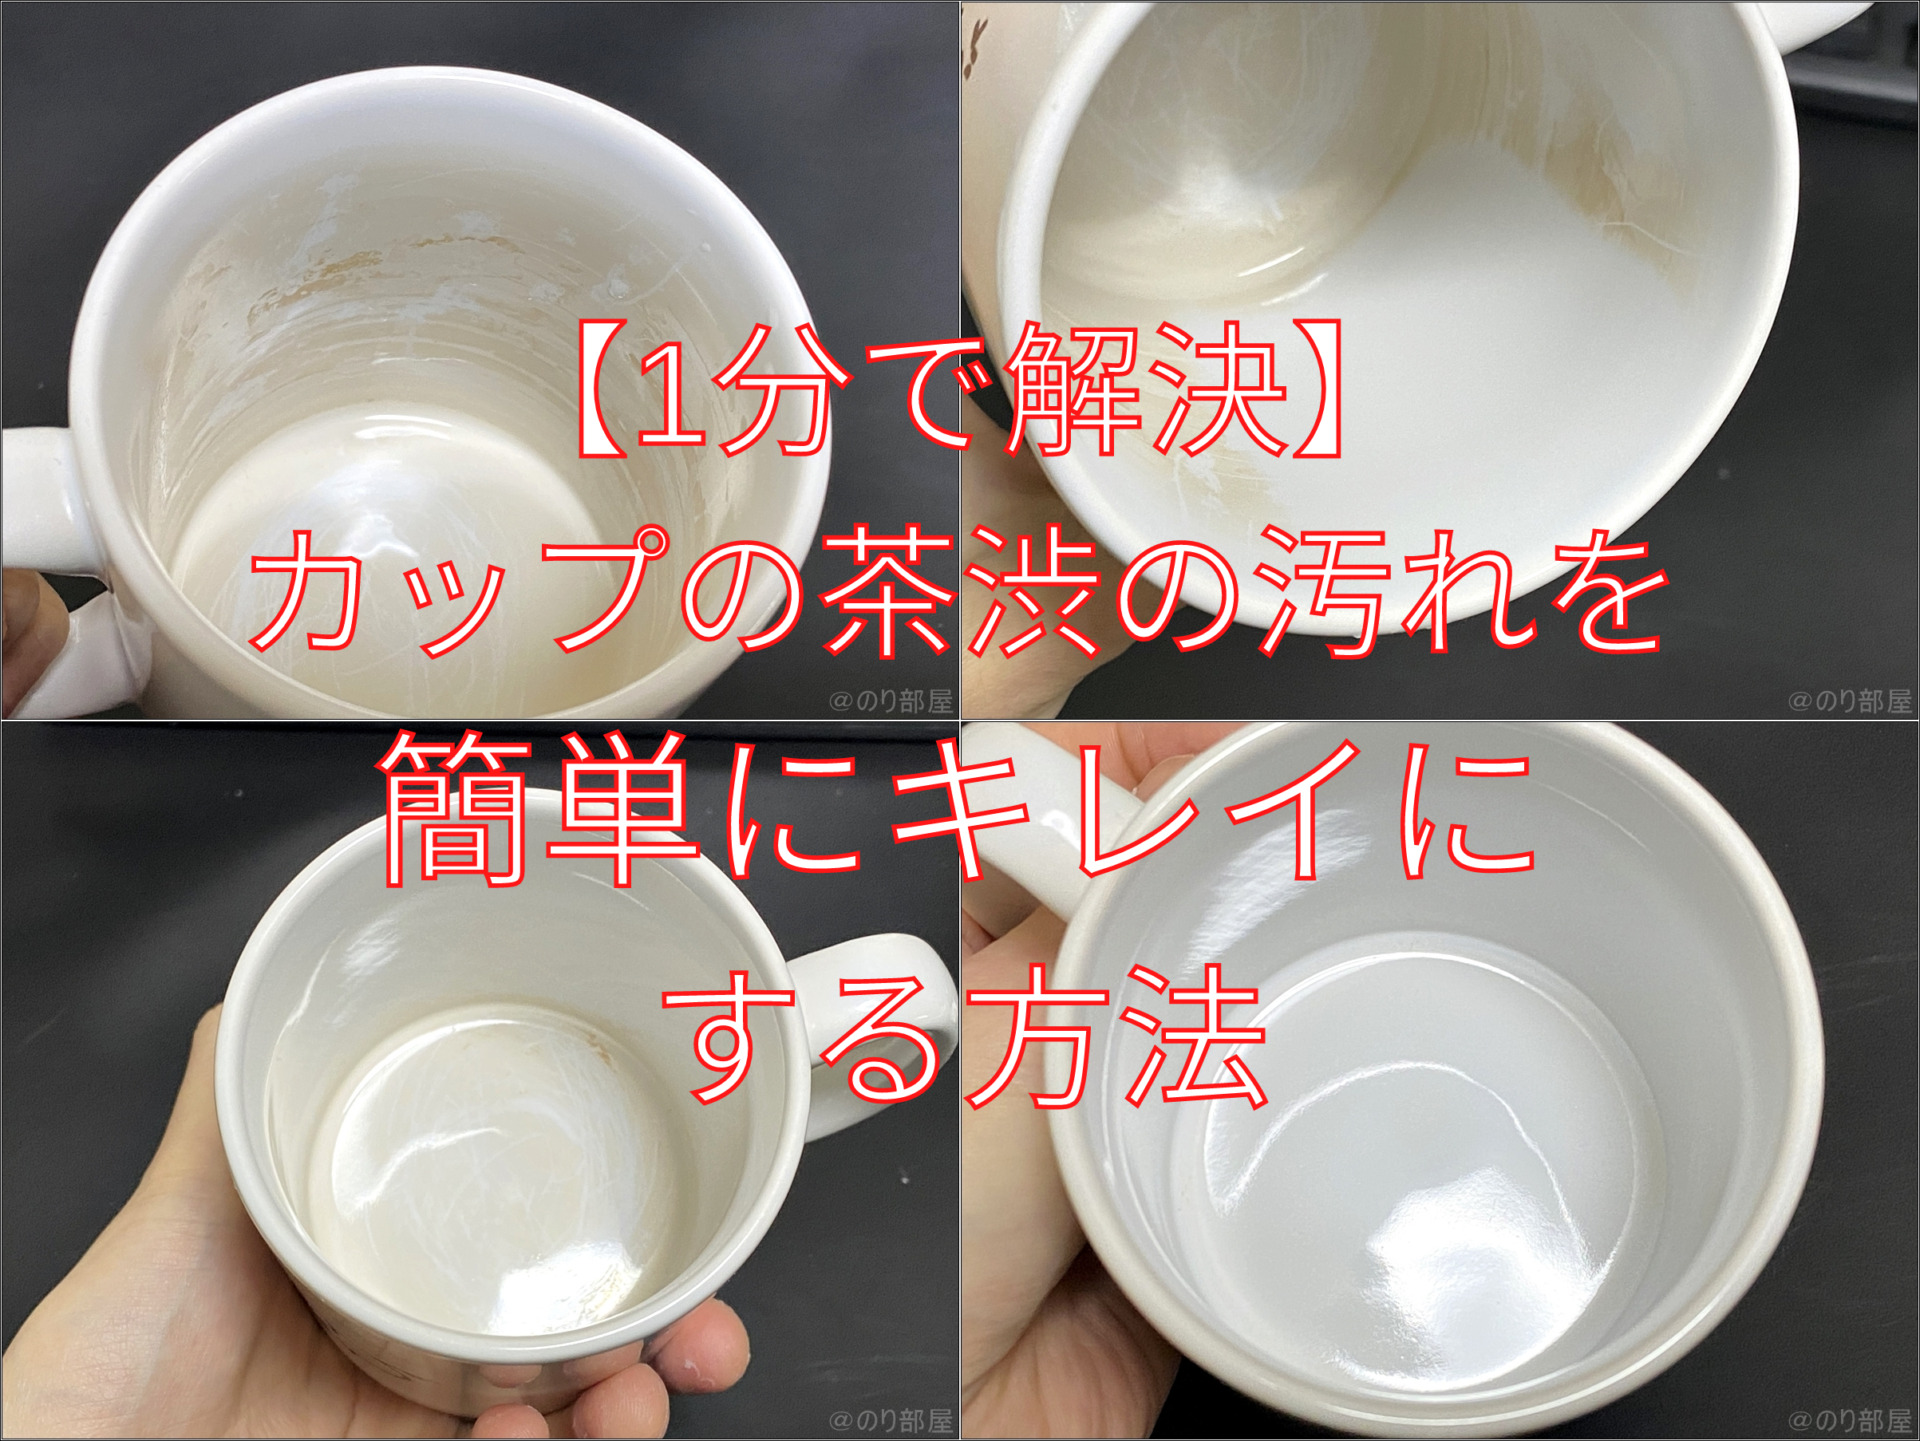 【1分で解決】カップの汚れを簡単に取る方法。紅茶の茶渋の跡を一瞬で簡単に安全に落とすことができます！【コーヒーやミルクティーのコップの汚れ】